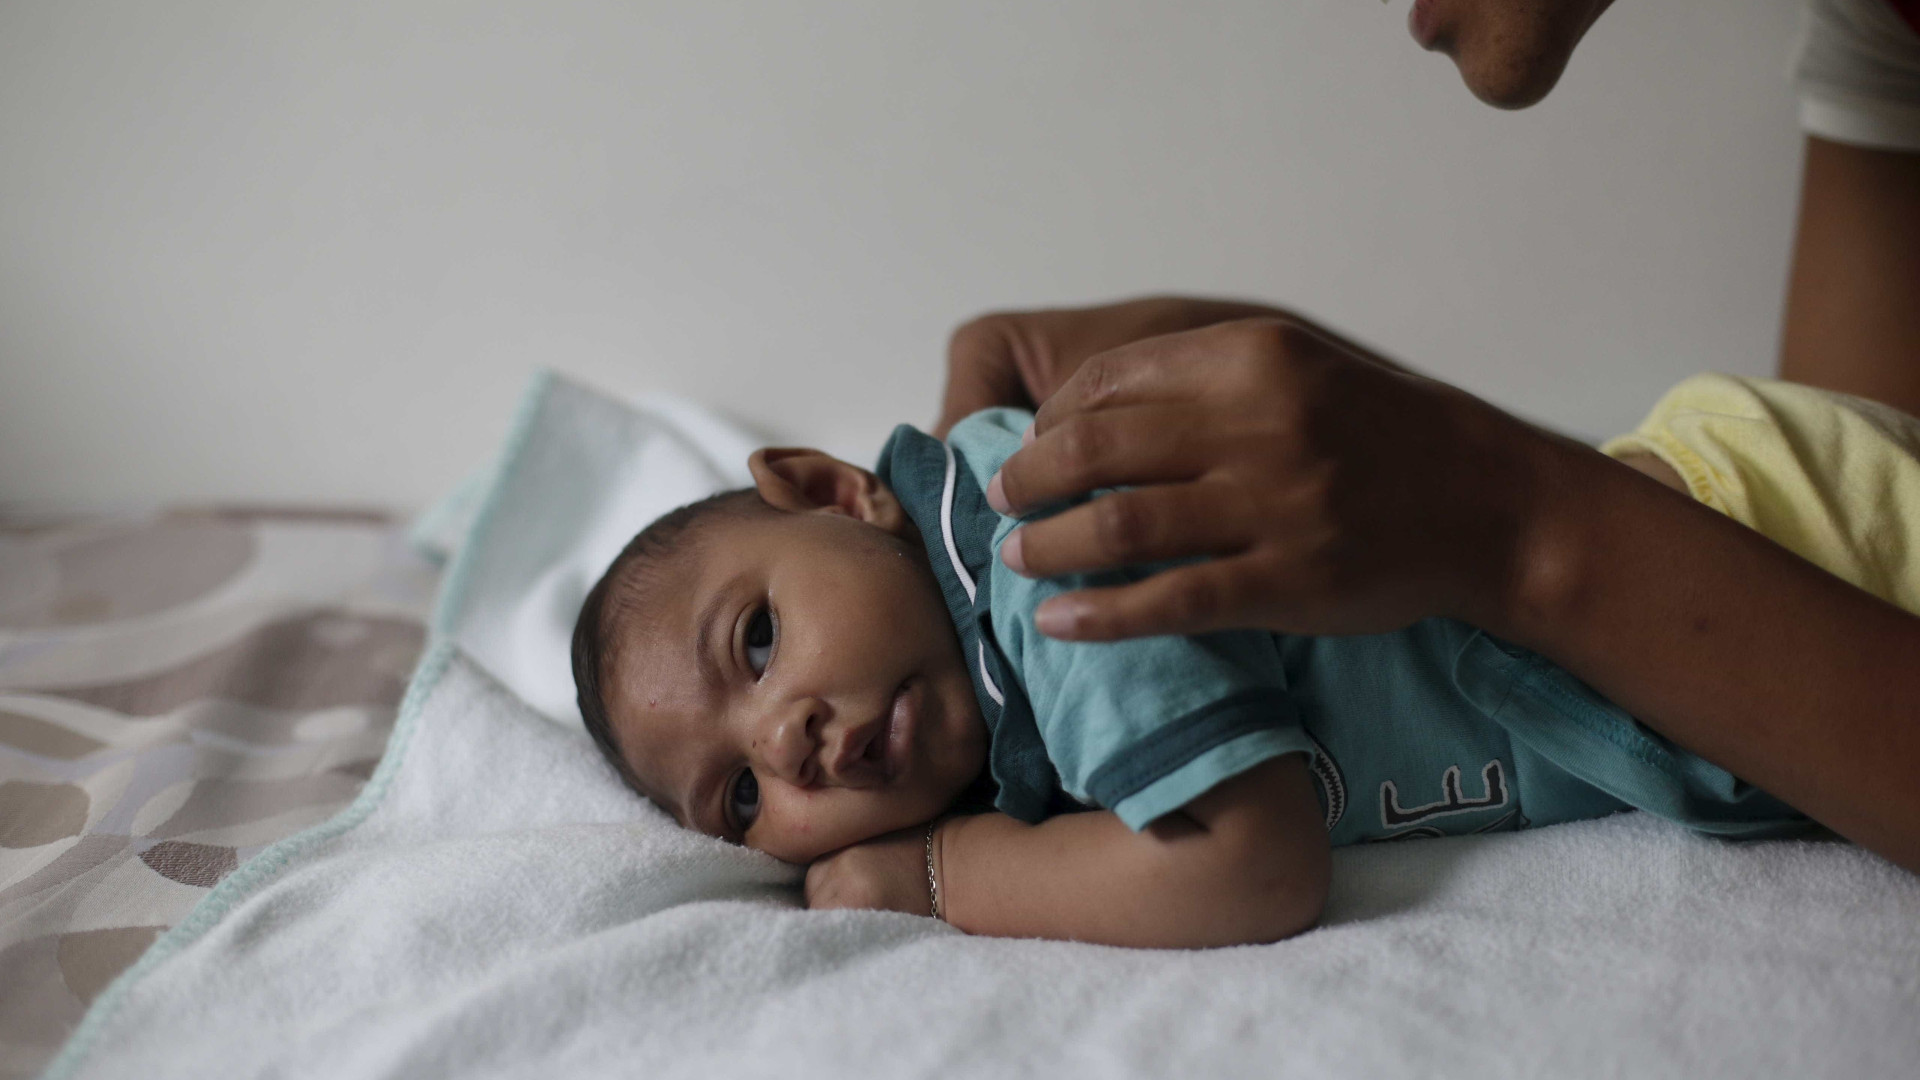 Campanha quer estimular a amamentação 
de bebês com microcefalia